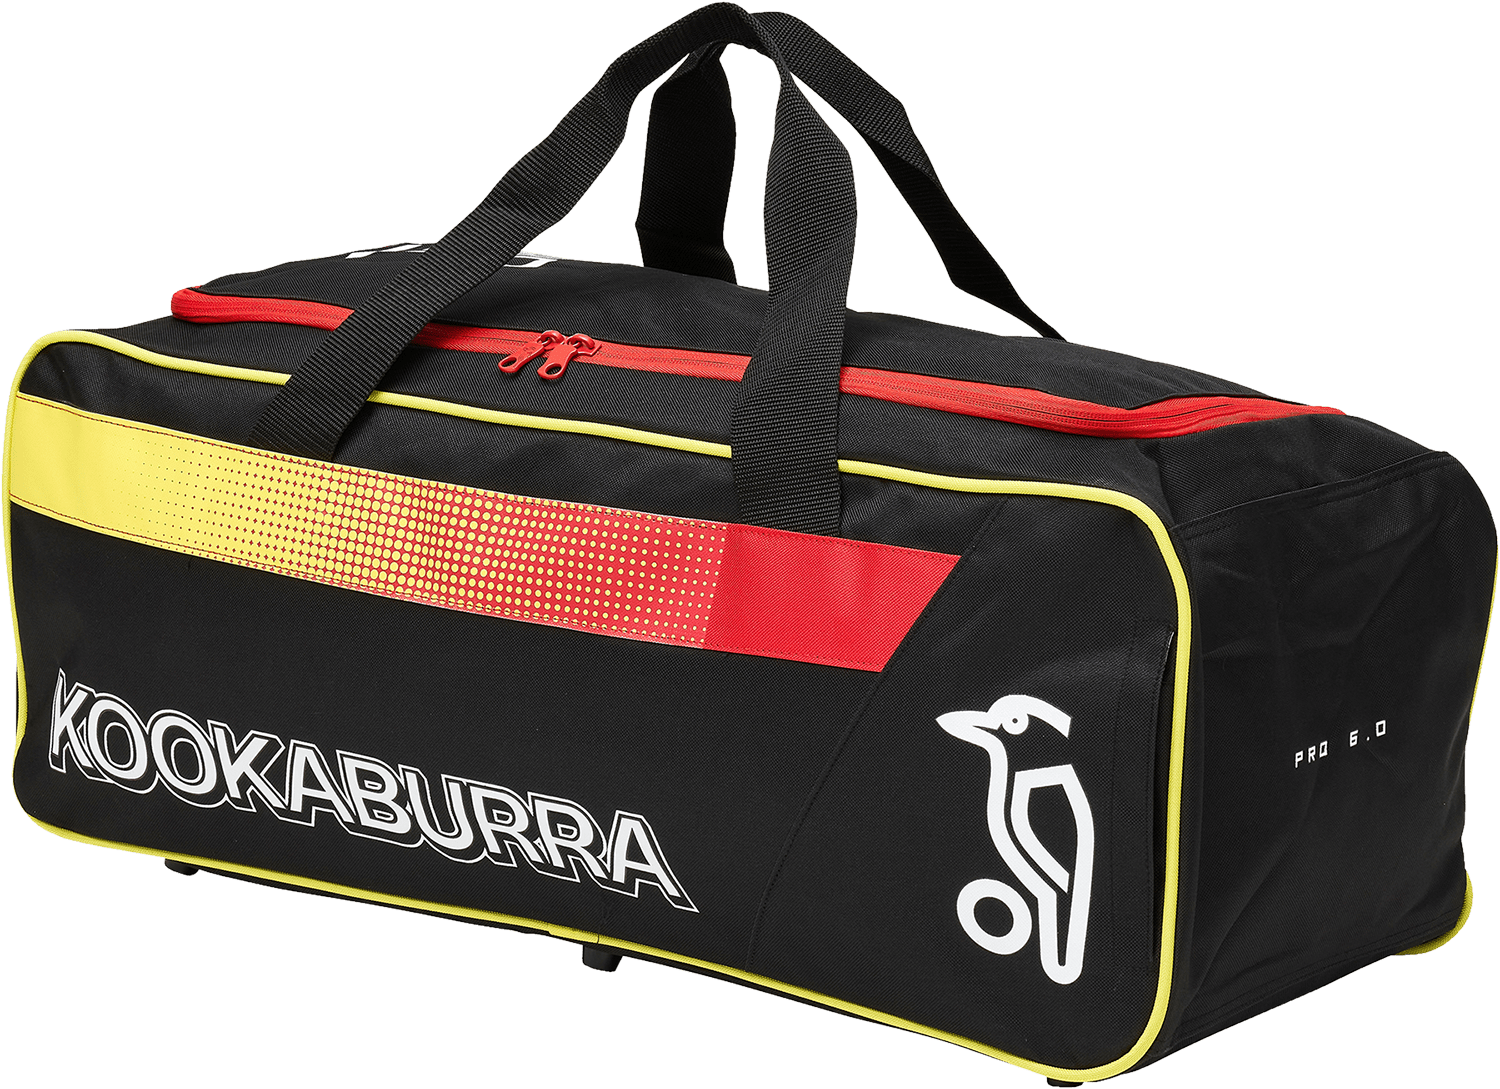 Kookaburra Cricket Bags Kookaburra Pro 6.0 Holdall Cricket Bag